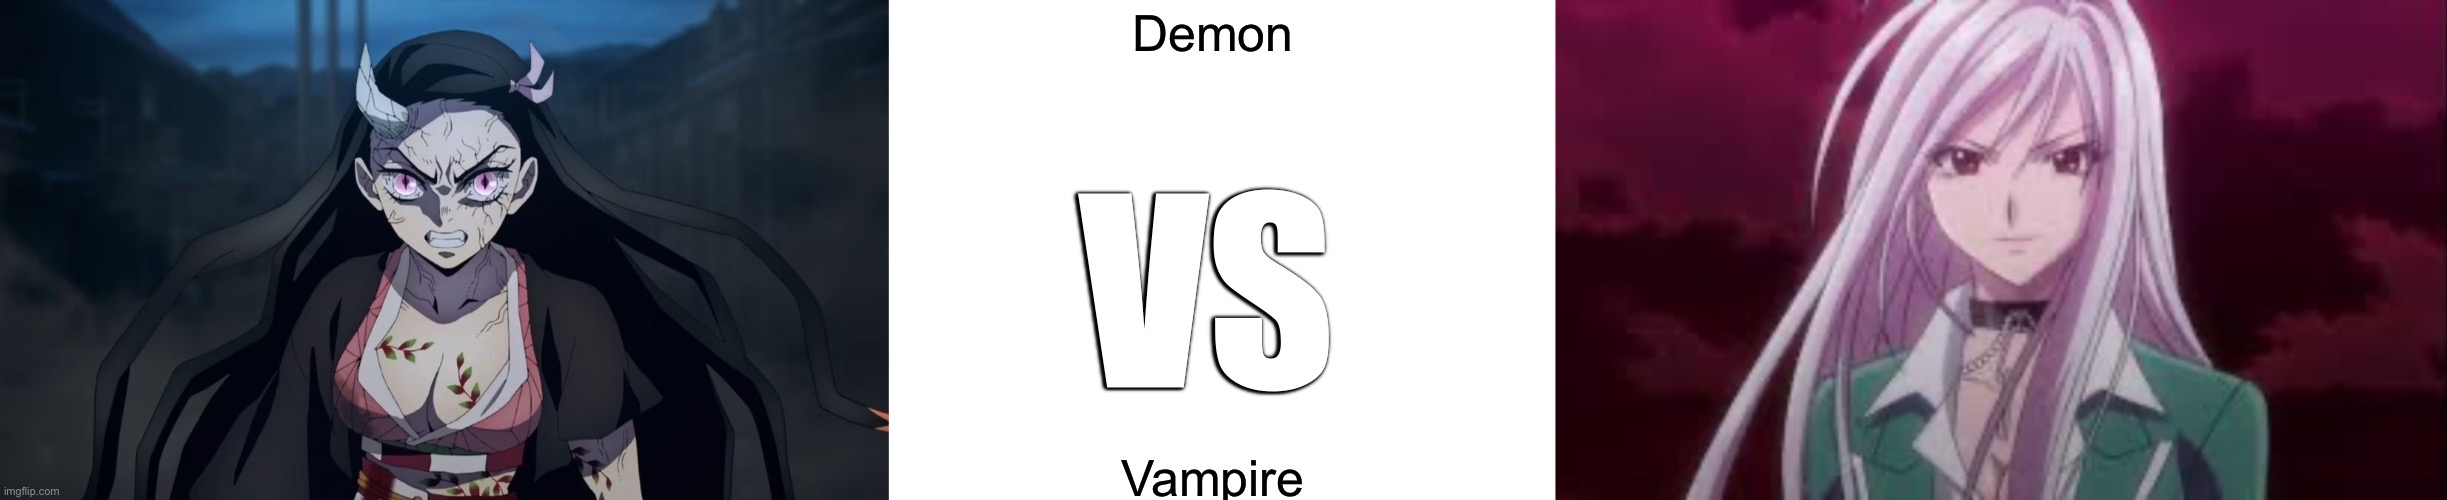 Demon VS Vampire | Demon; VS; Vampire | image tagged in demon,vampire | made w/ Imgflip meme maker